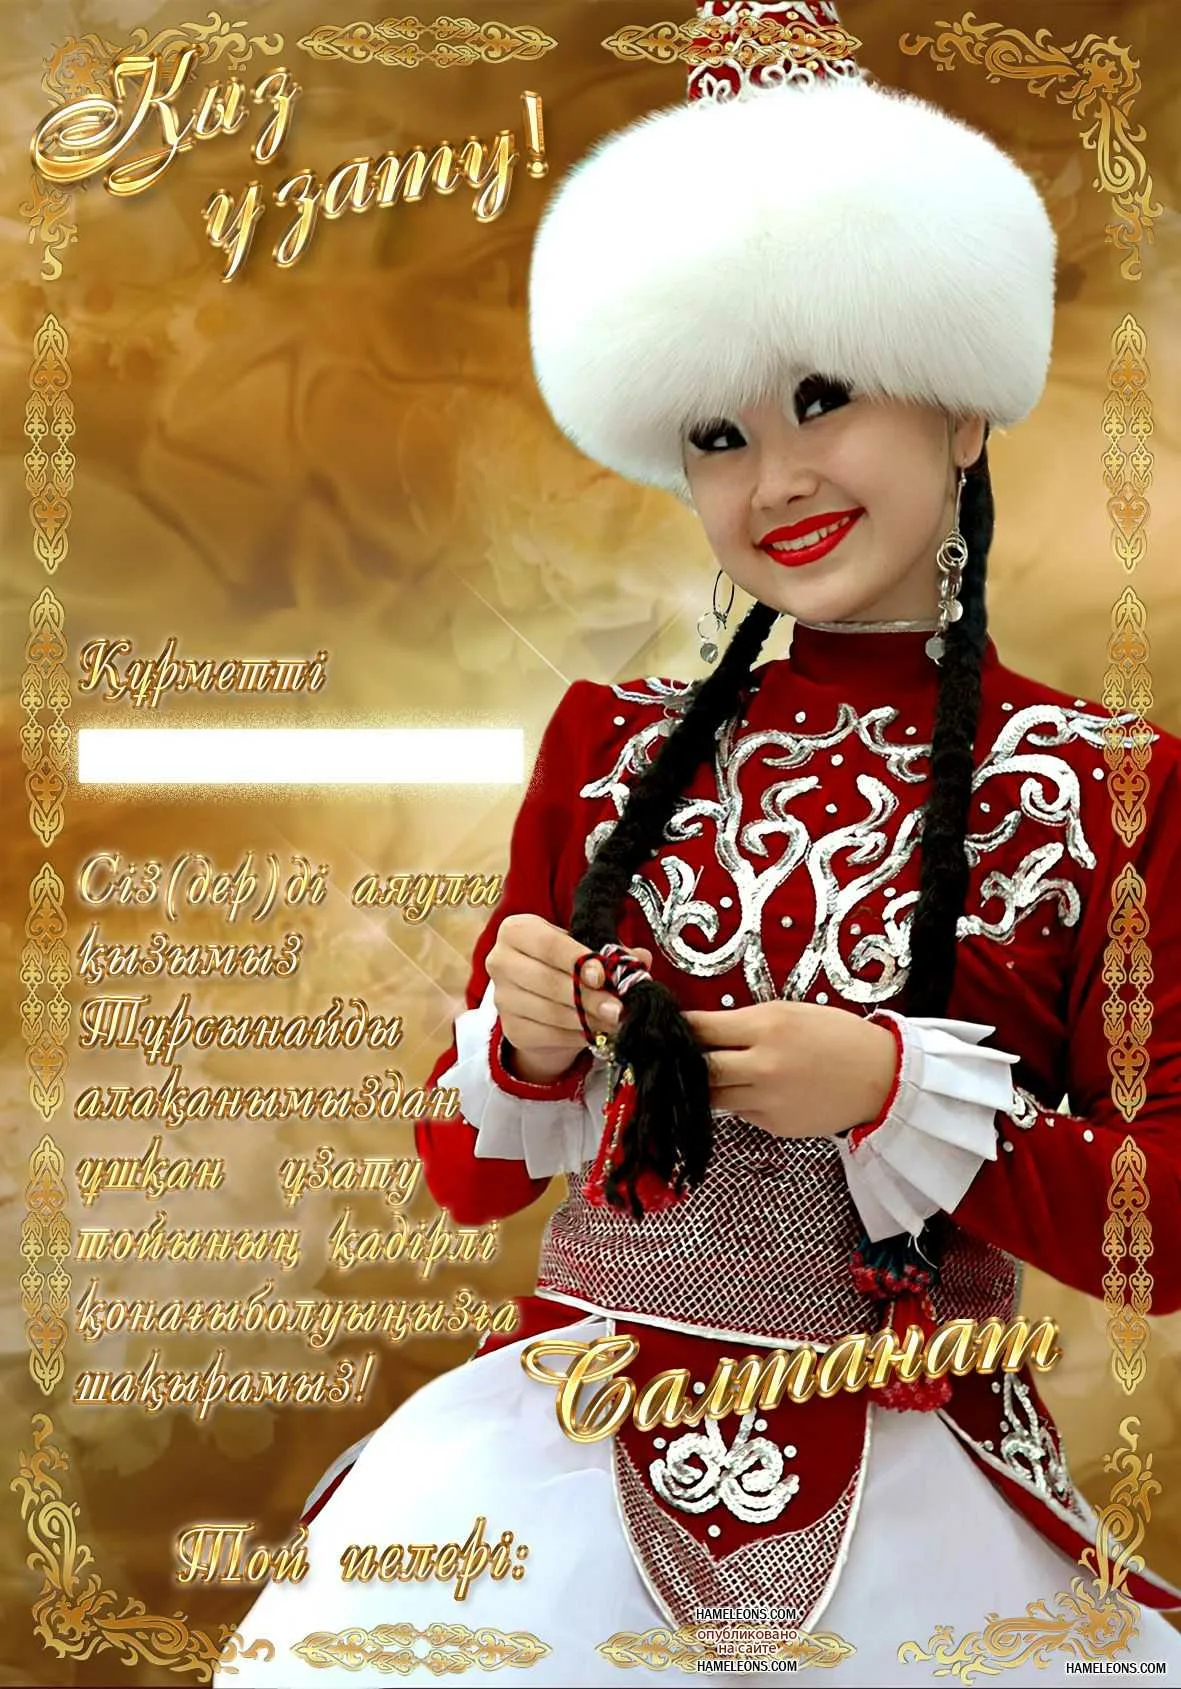 Фото Поздравления с Новым годом на казахском с переводом на русский язык #6